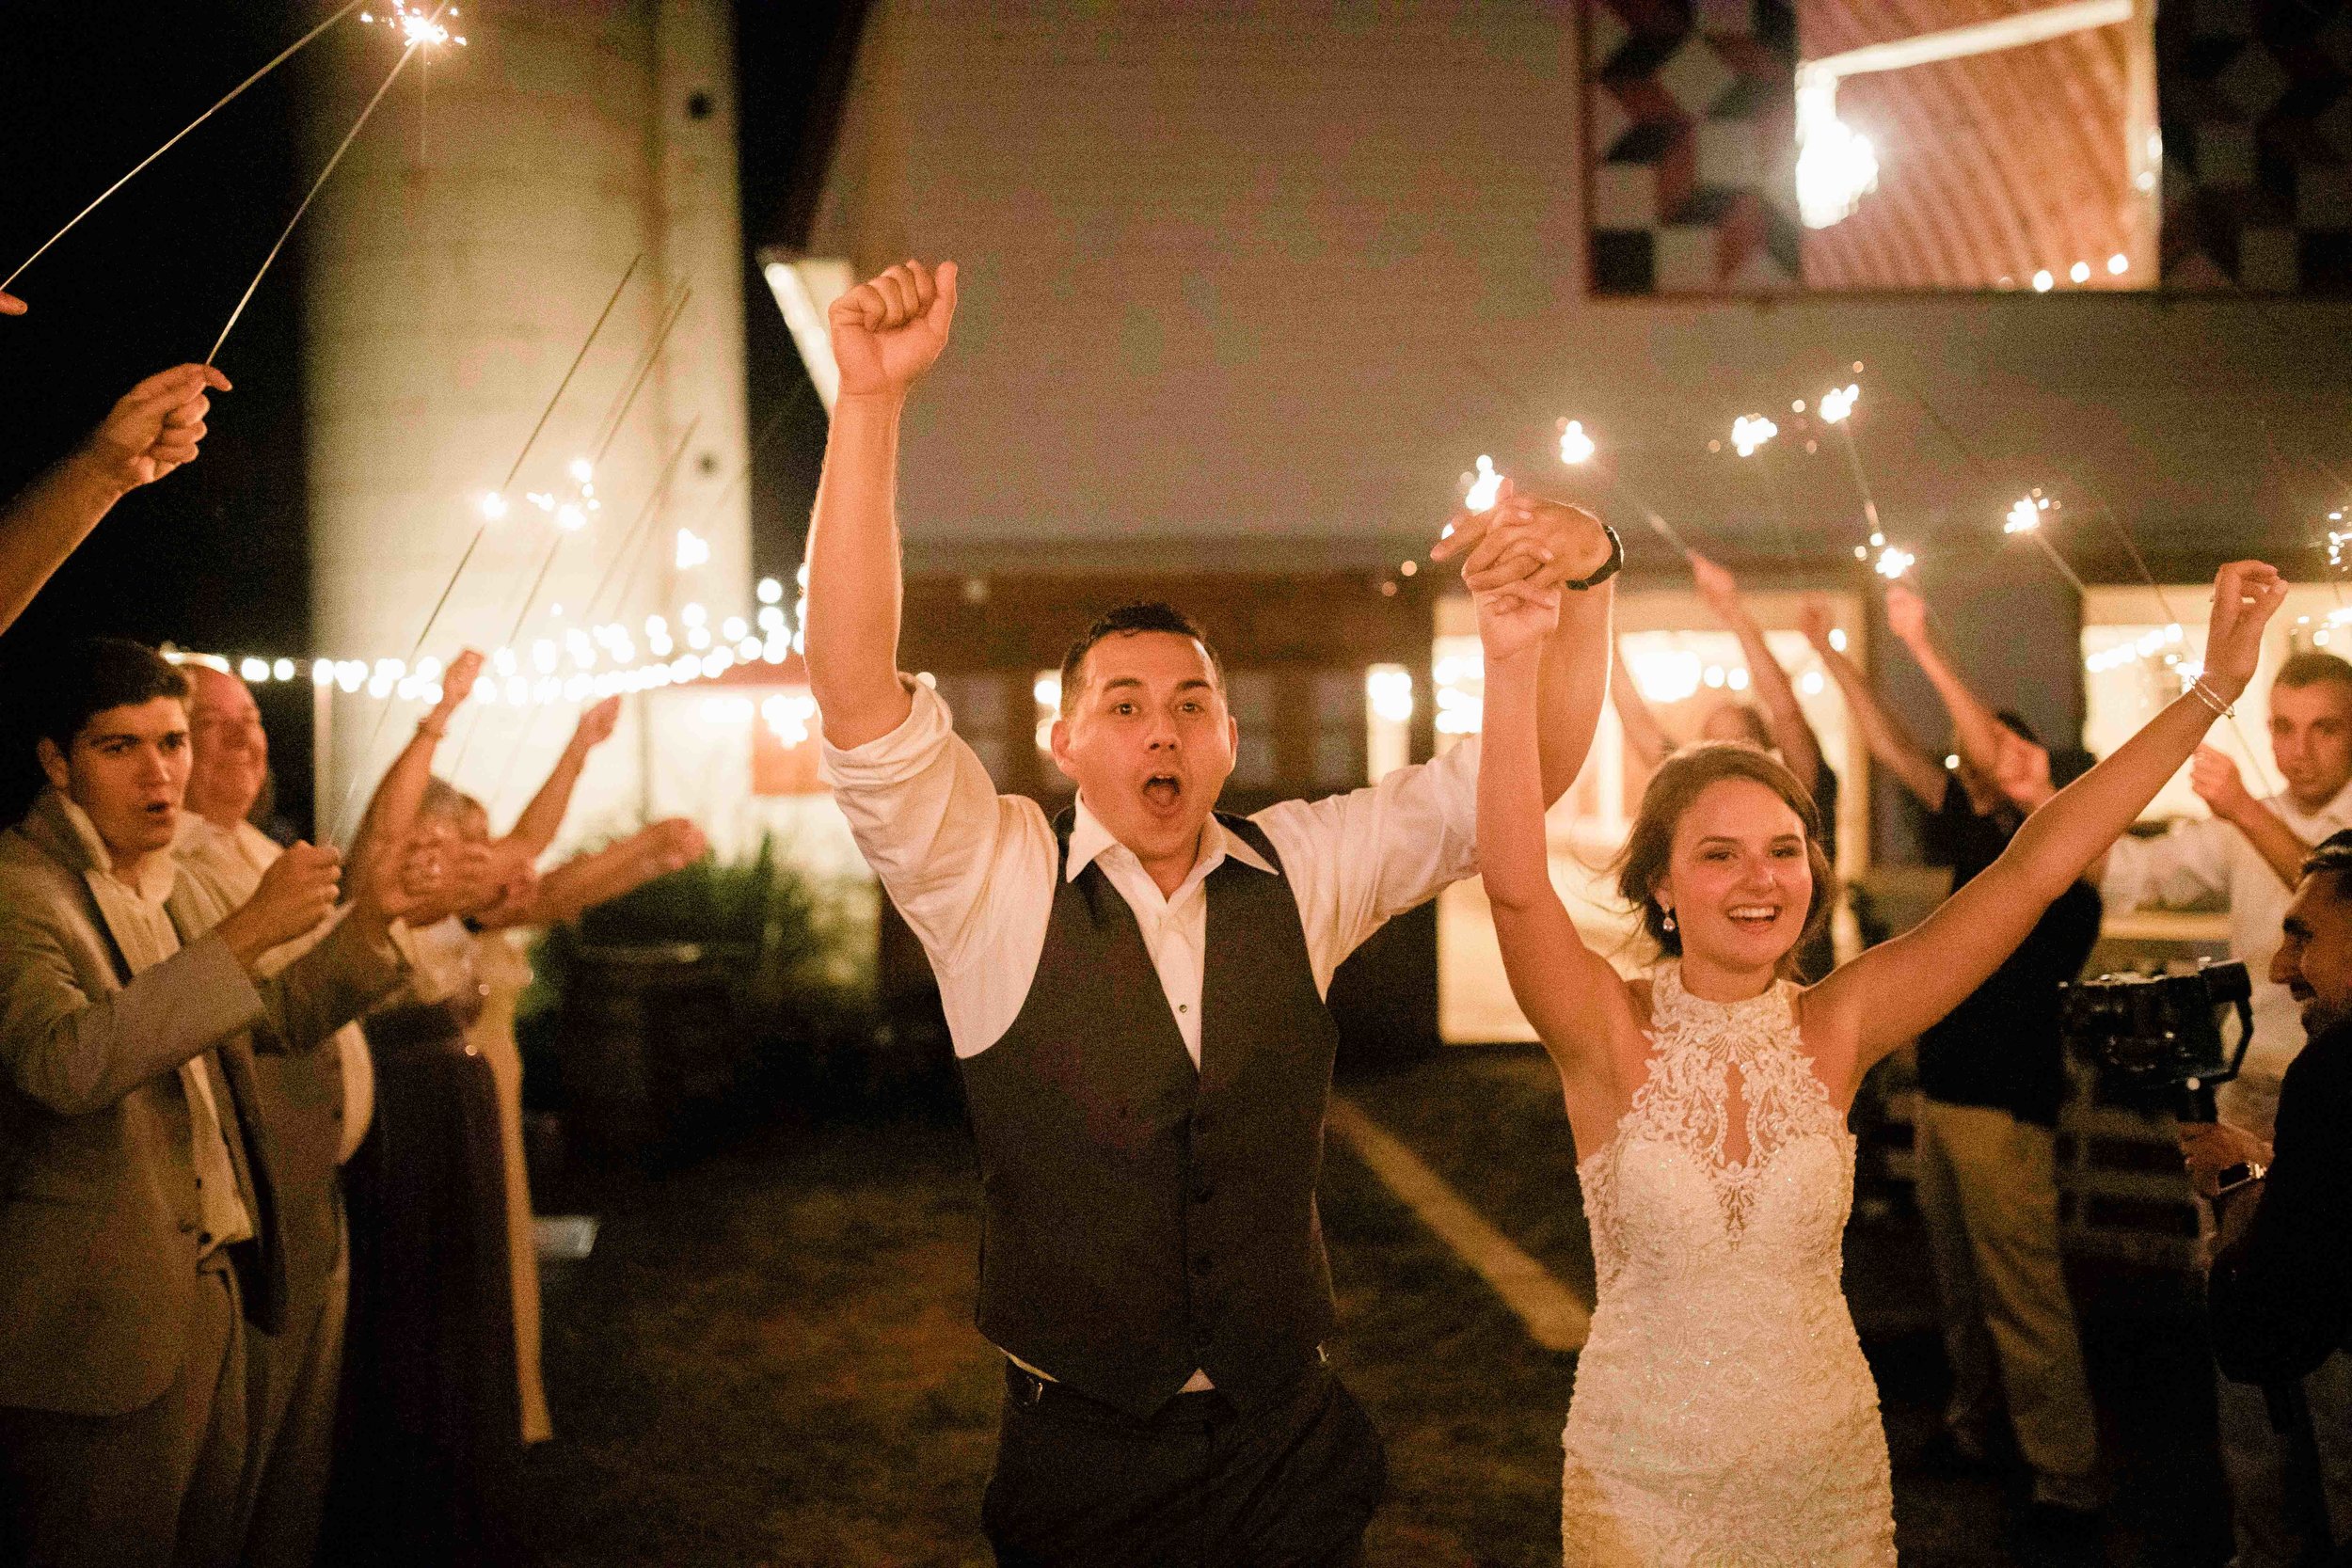 sparkler exit wedding reception-1.jpg